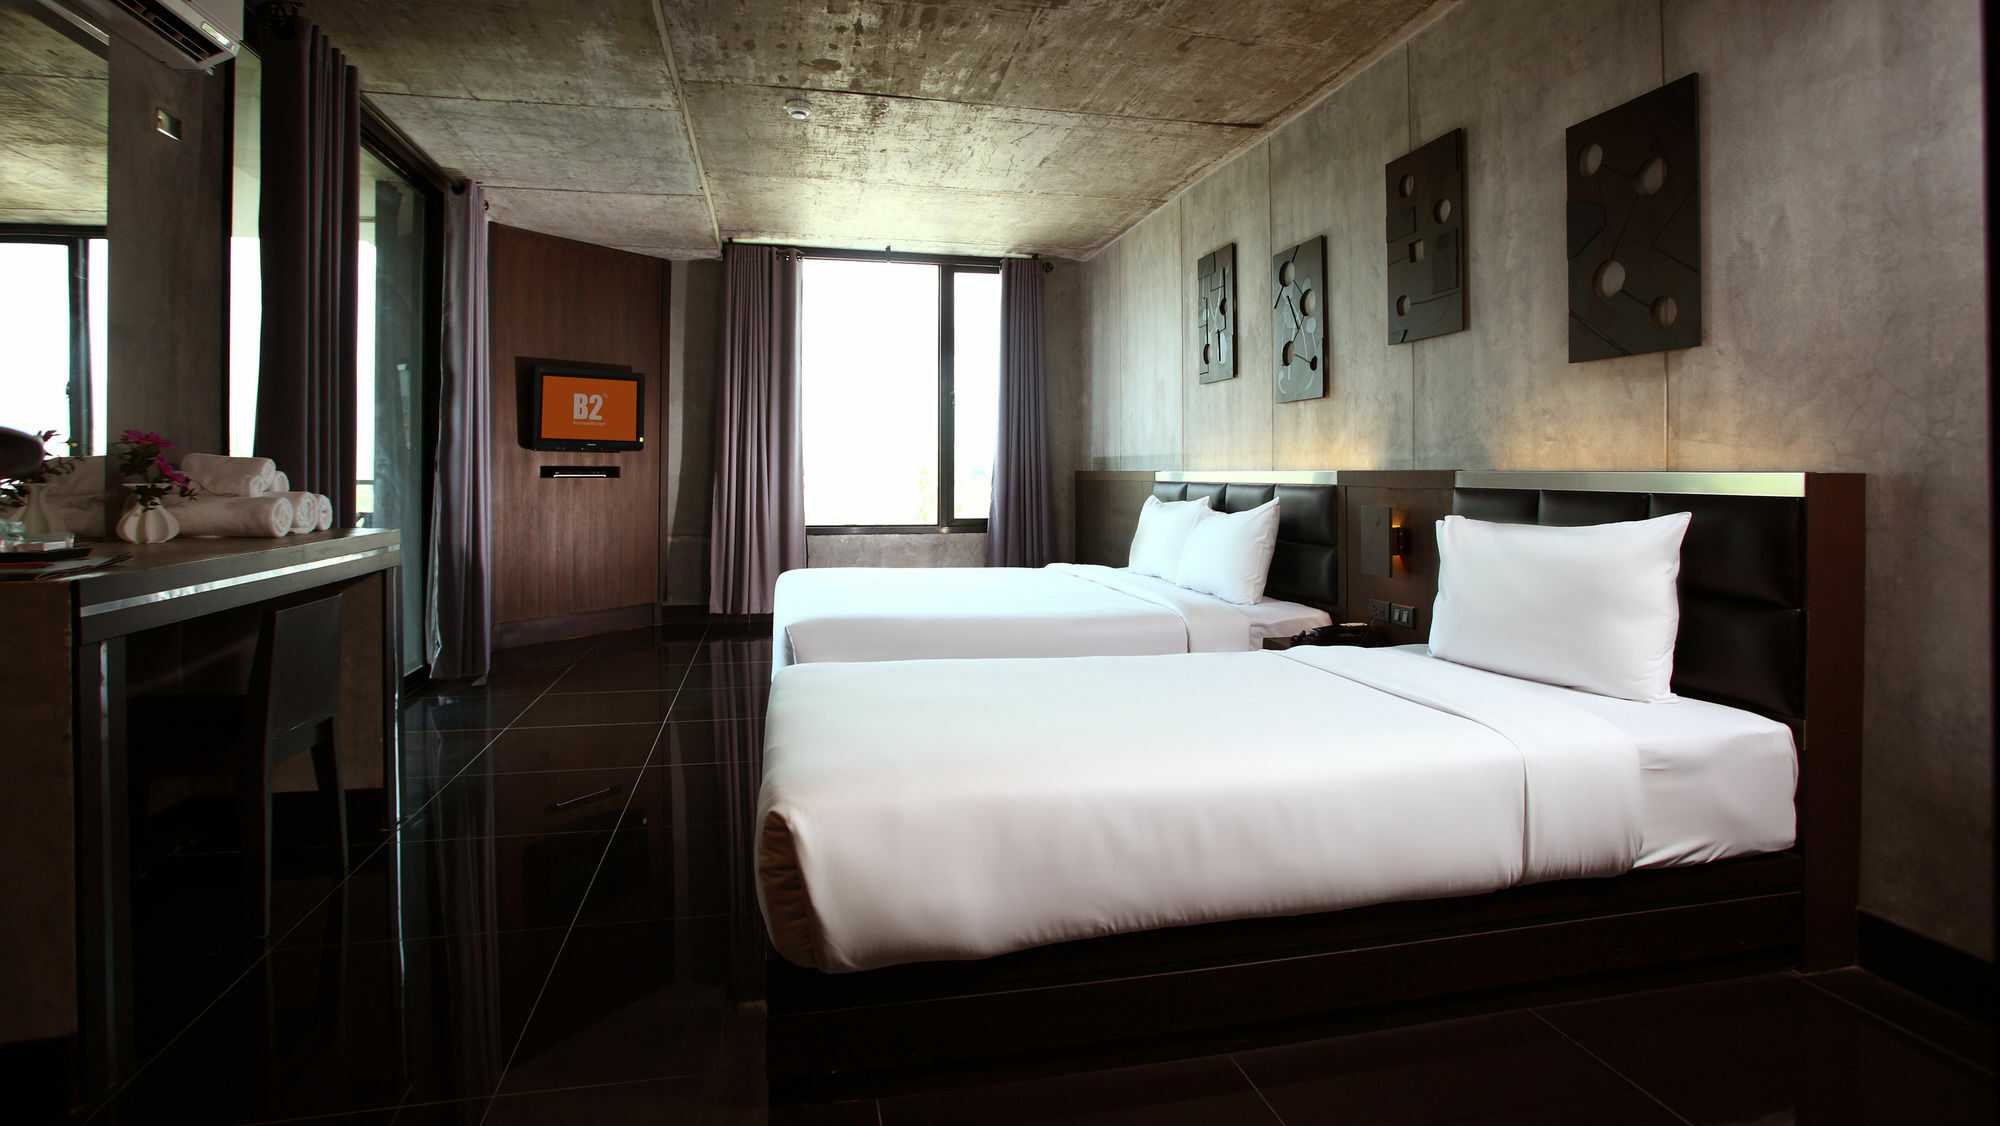 โรงแรม บีทู แบล็ค เชียงใหม่ 3* (ไทย) - จาก 918 THB | HOTELMIX